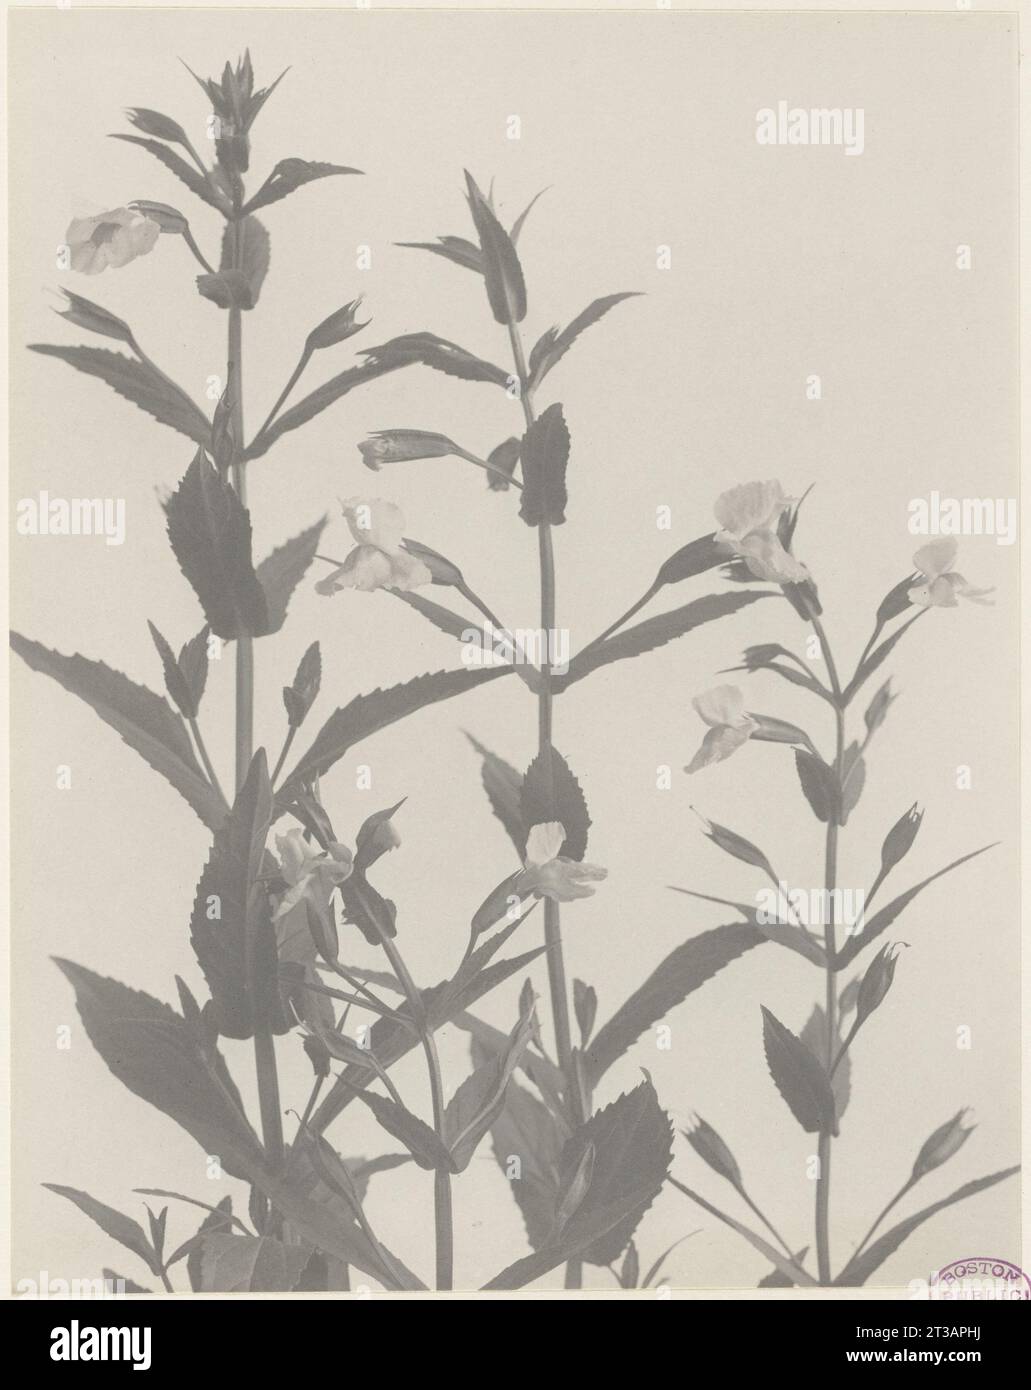 198. Mimulus ringens, monkey-flower Stock Photo